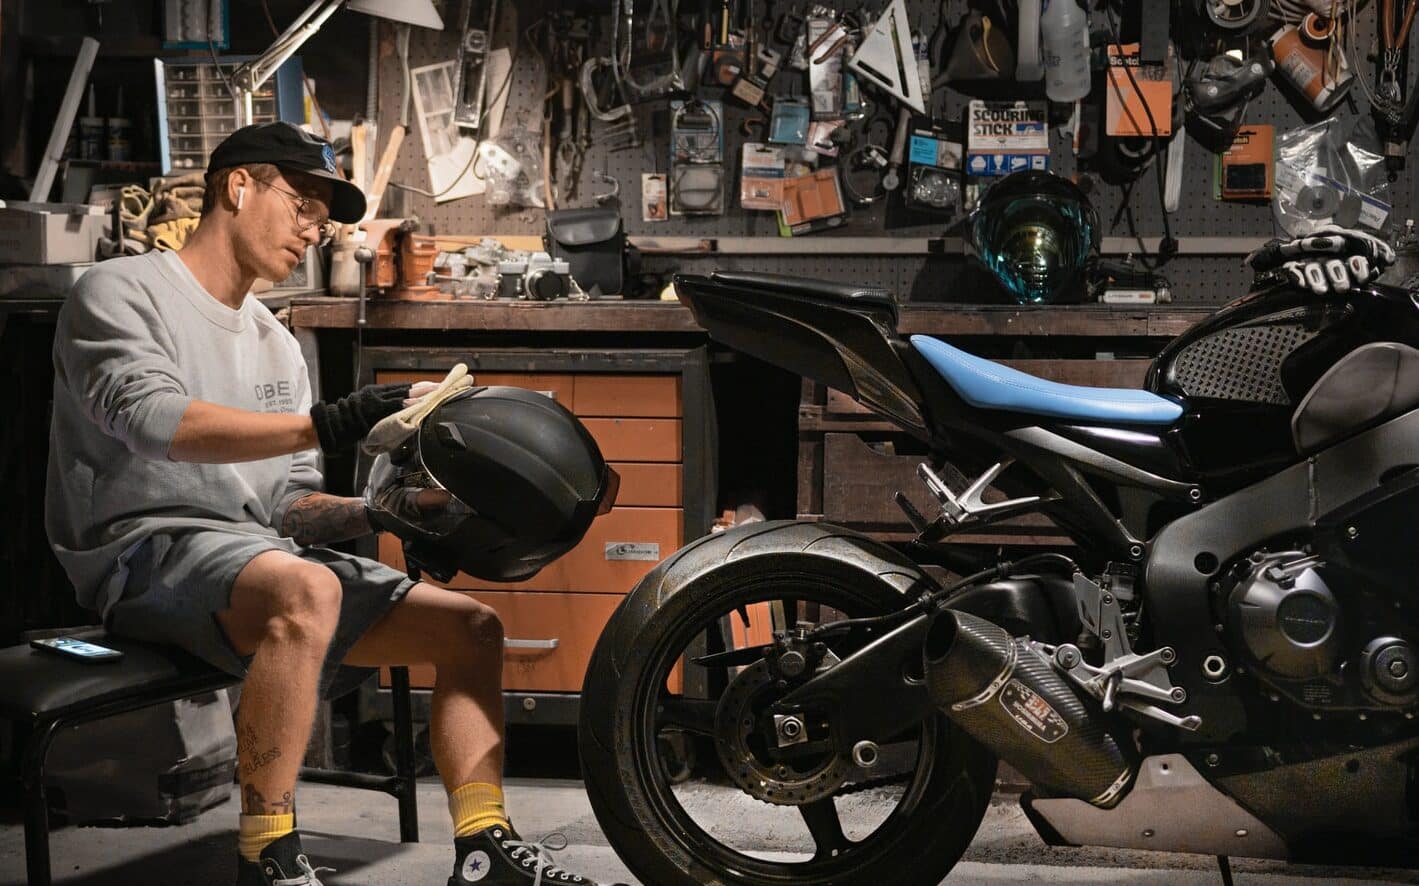 man wiping motorcycle helmet by motorcycle